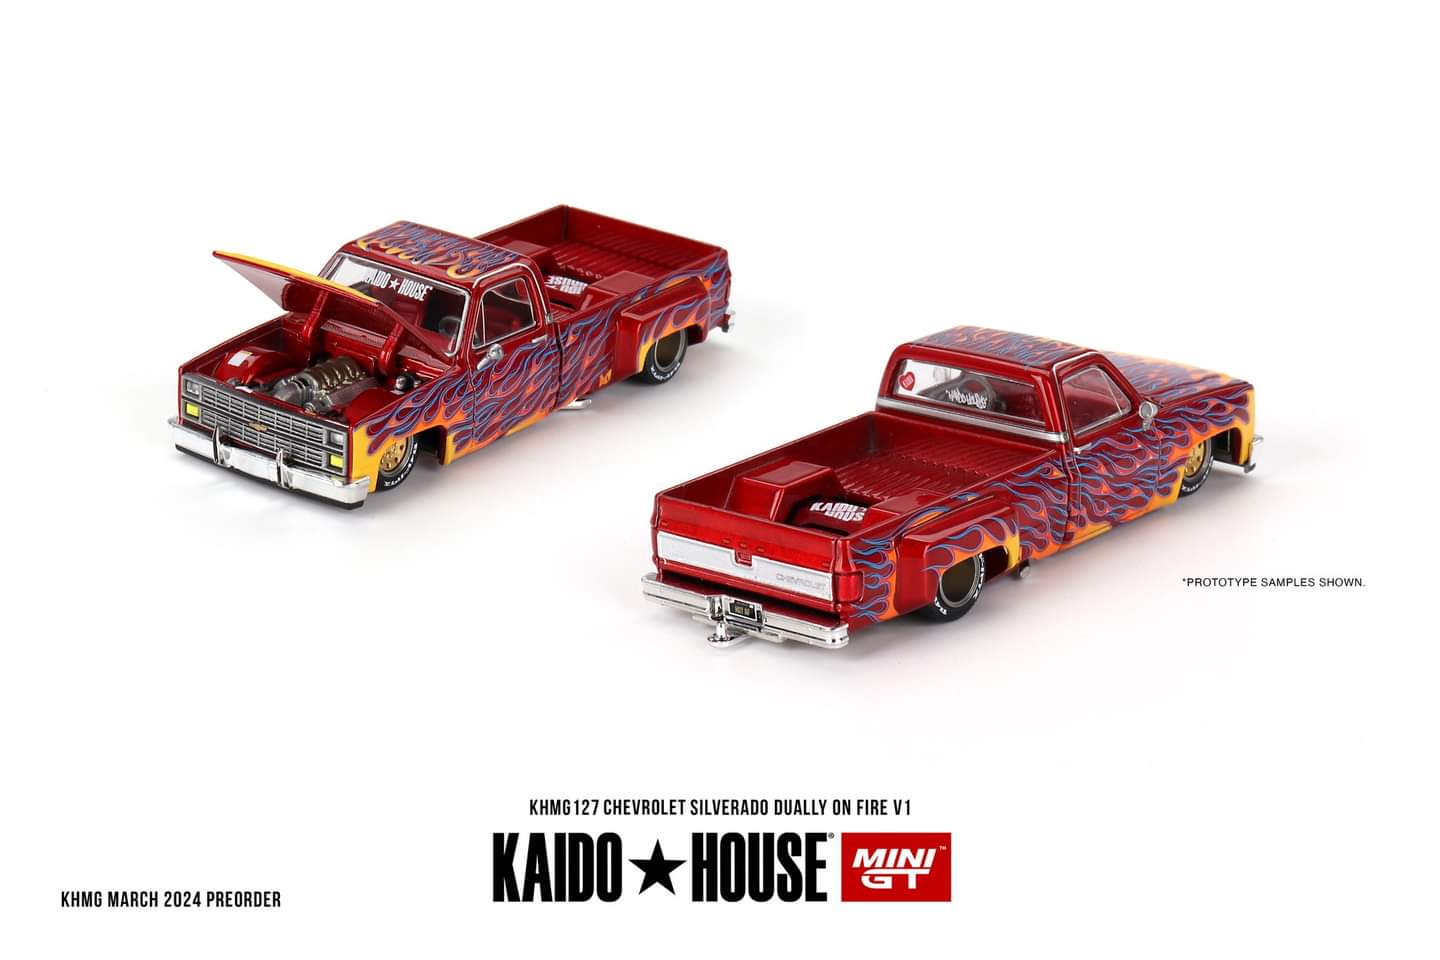 (PRE-ORDER) Kaido House
Chevrolet Silverado Dually on Fire V1